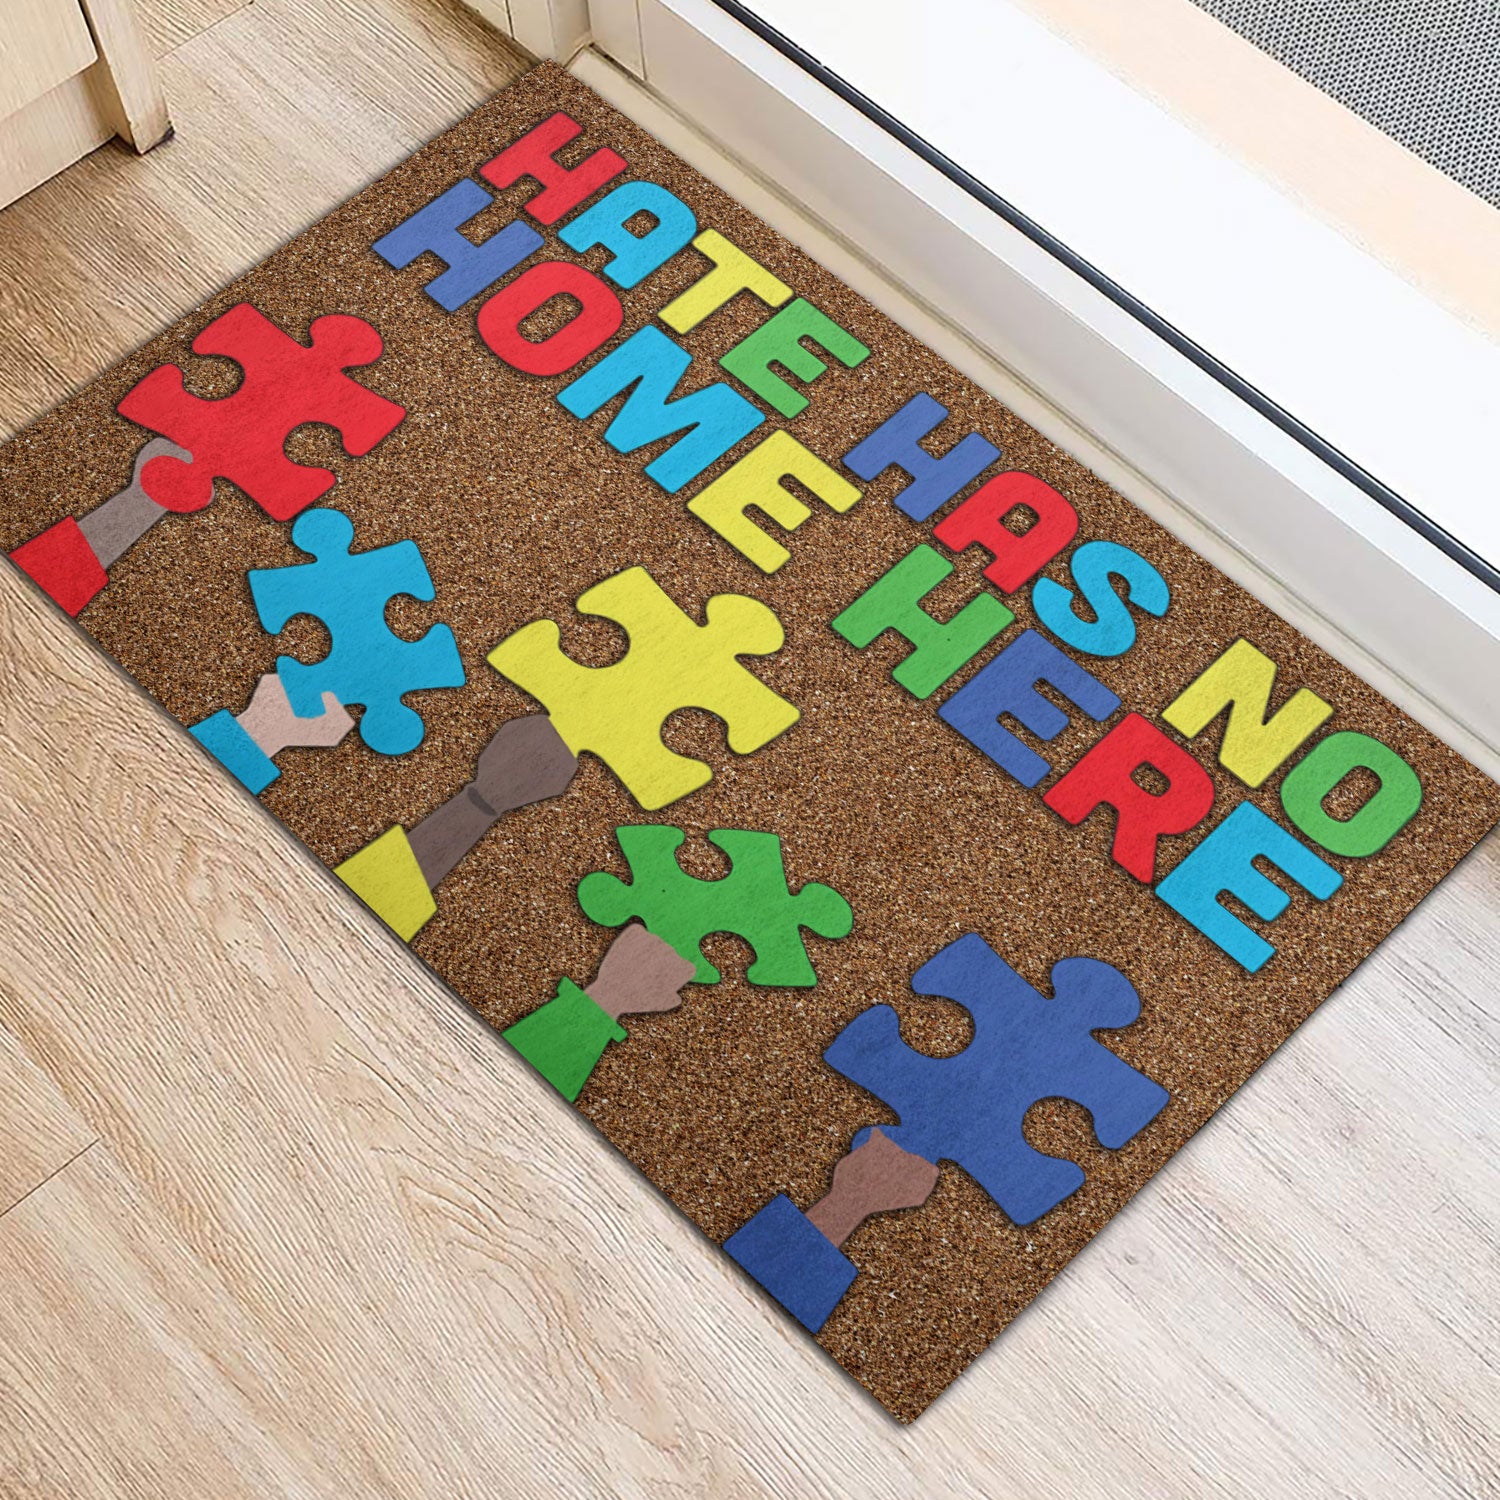 Ohaprints-Doormat-Outdoor-Indoor-Autism-Awareness-Hate-Has-No-Home-Here-Never-Give-Up-Rubber-Door-Mat-304-